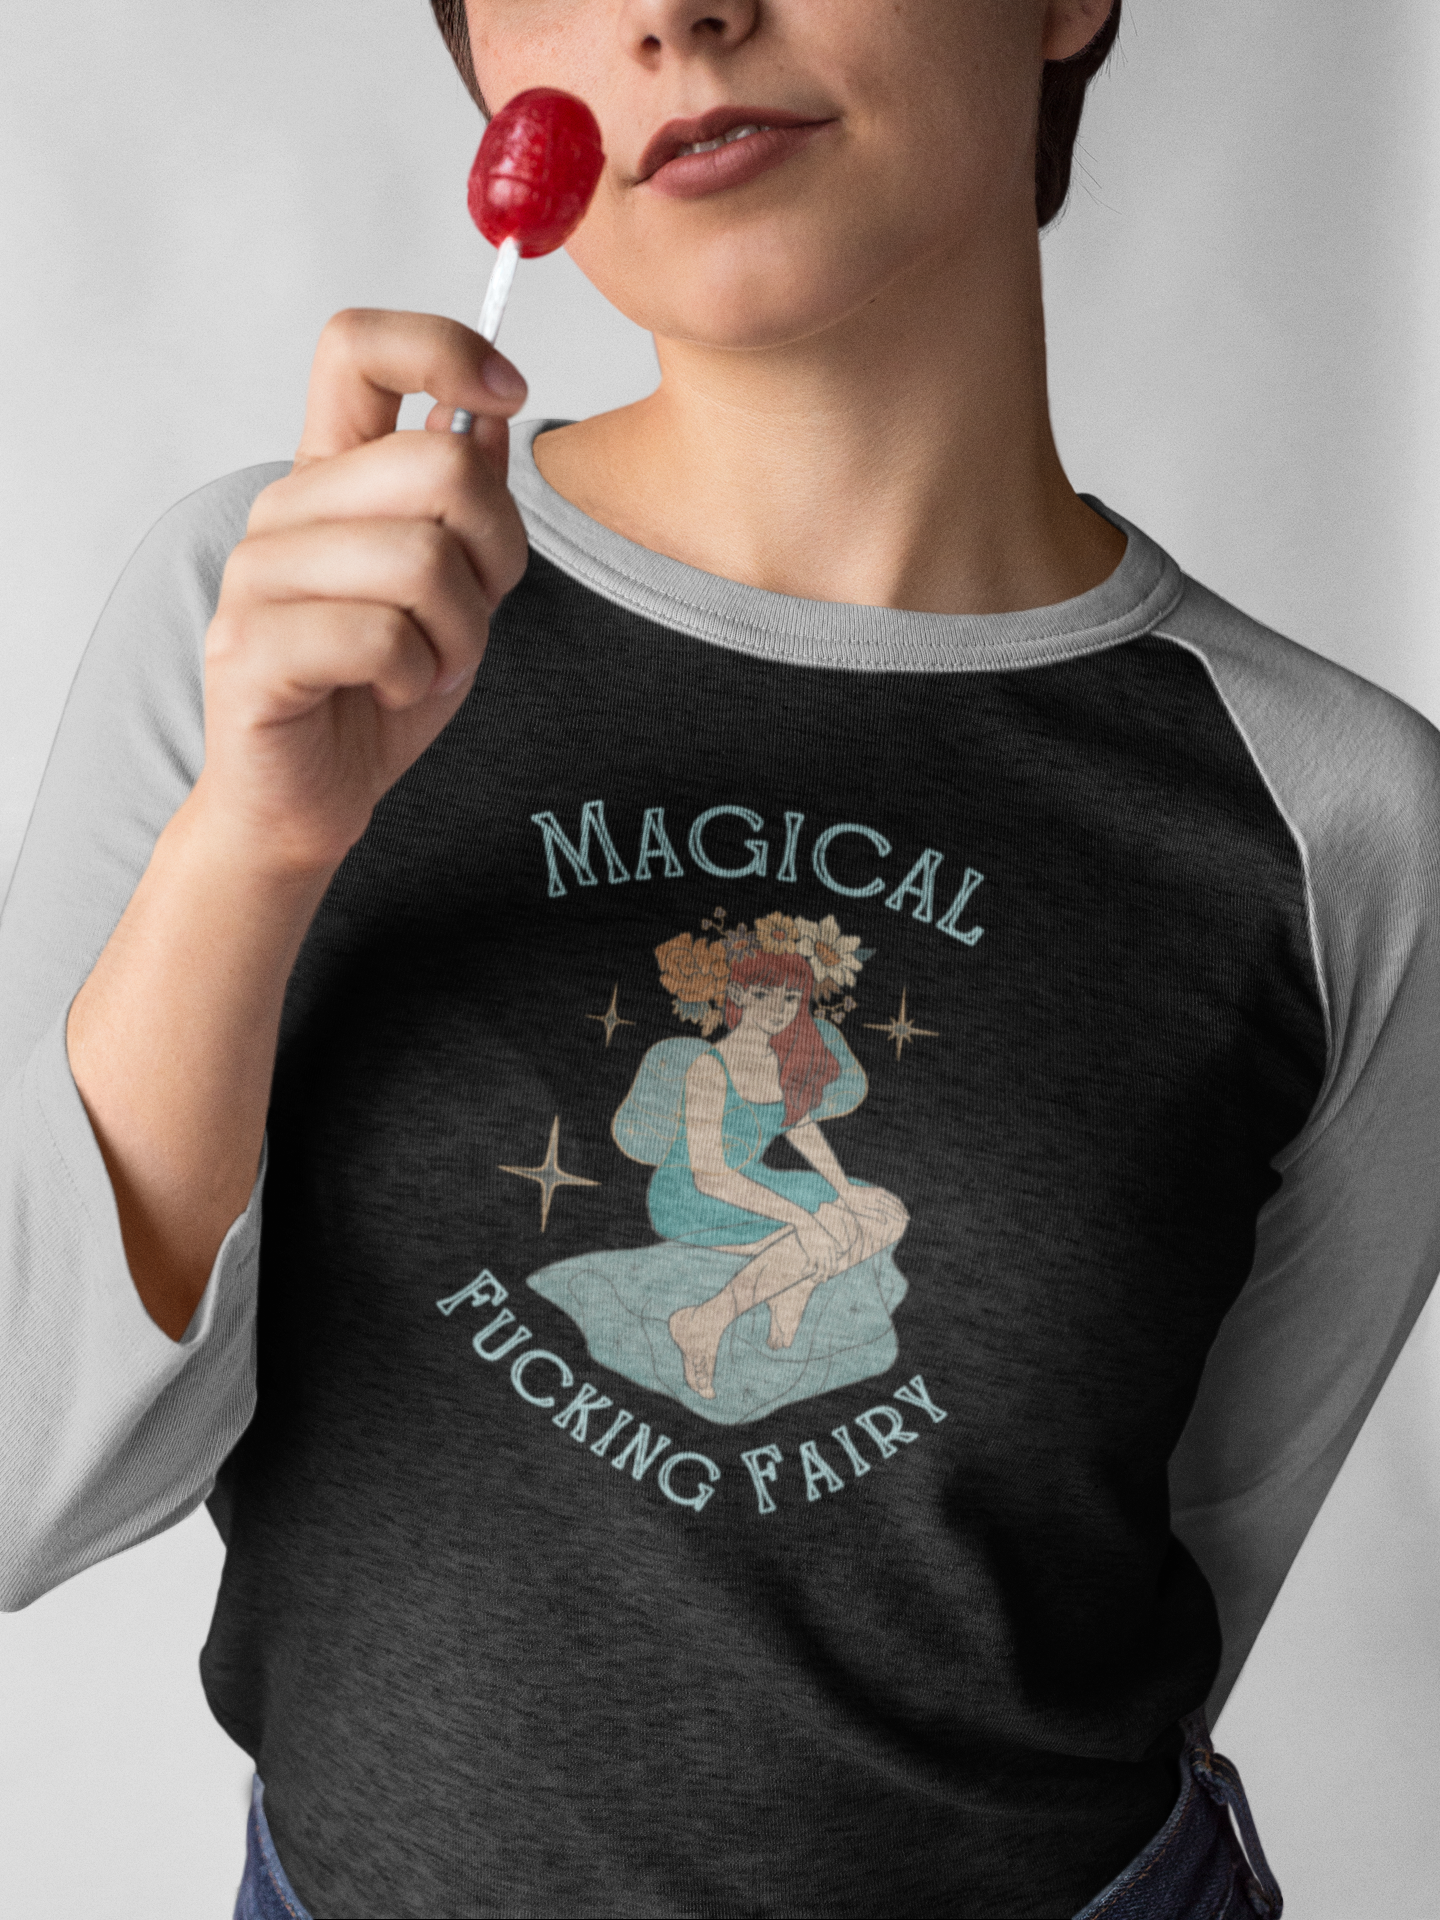 Magical F*king Fairy Unisex Tri-Blend 3\4 Raglan Tee